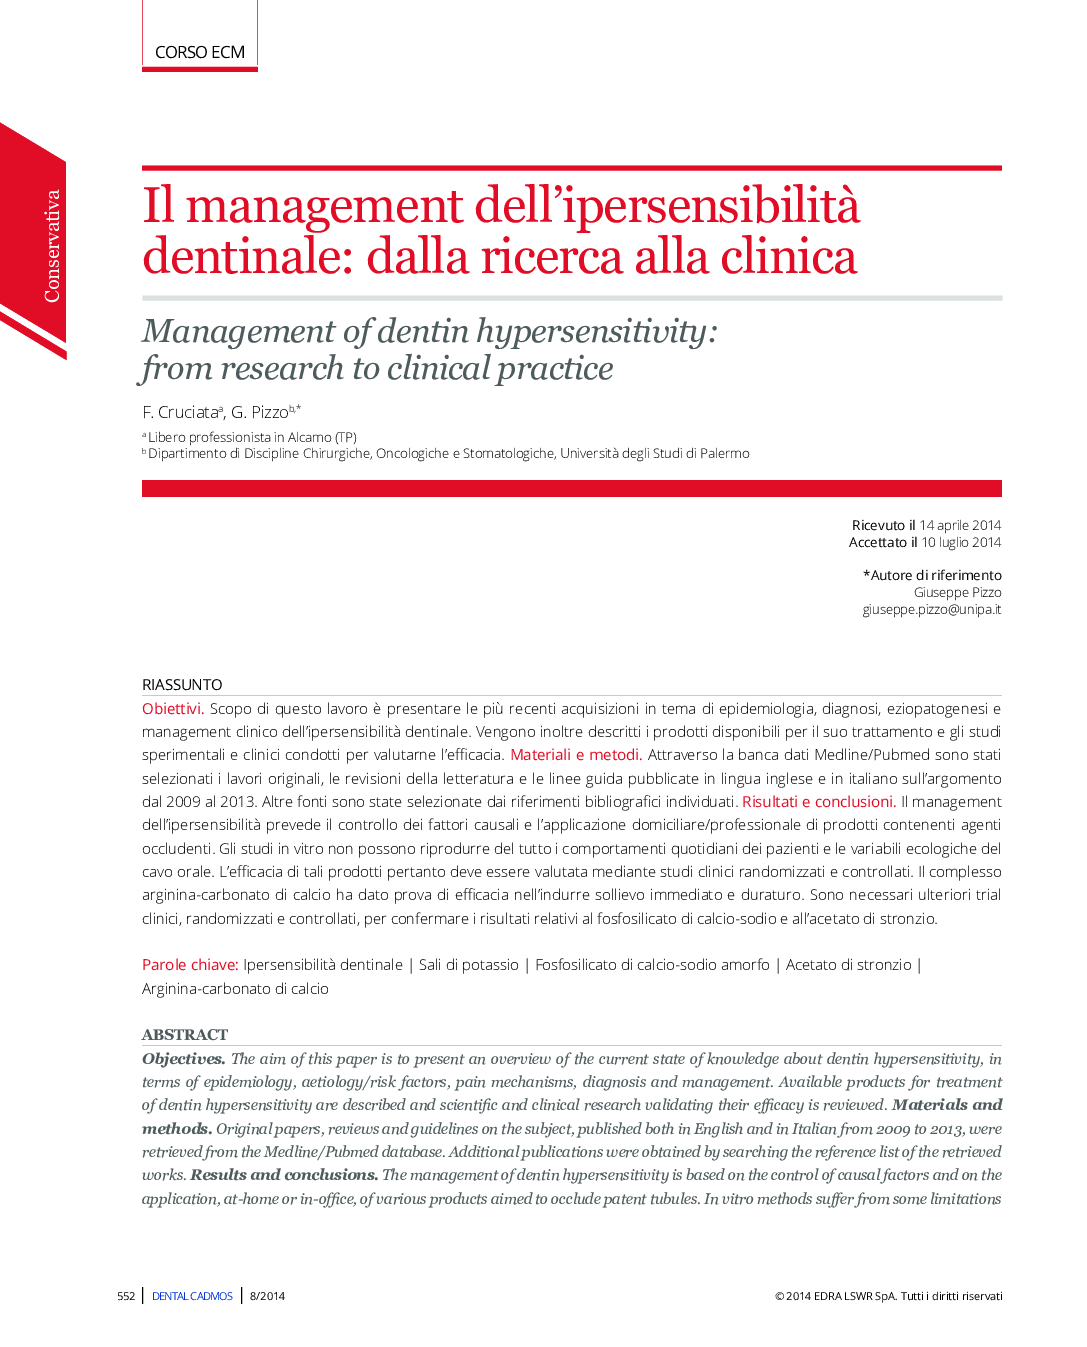 مدیریت حساسیت بالا در دندان: از تحقیق به درمانگاه 